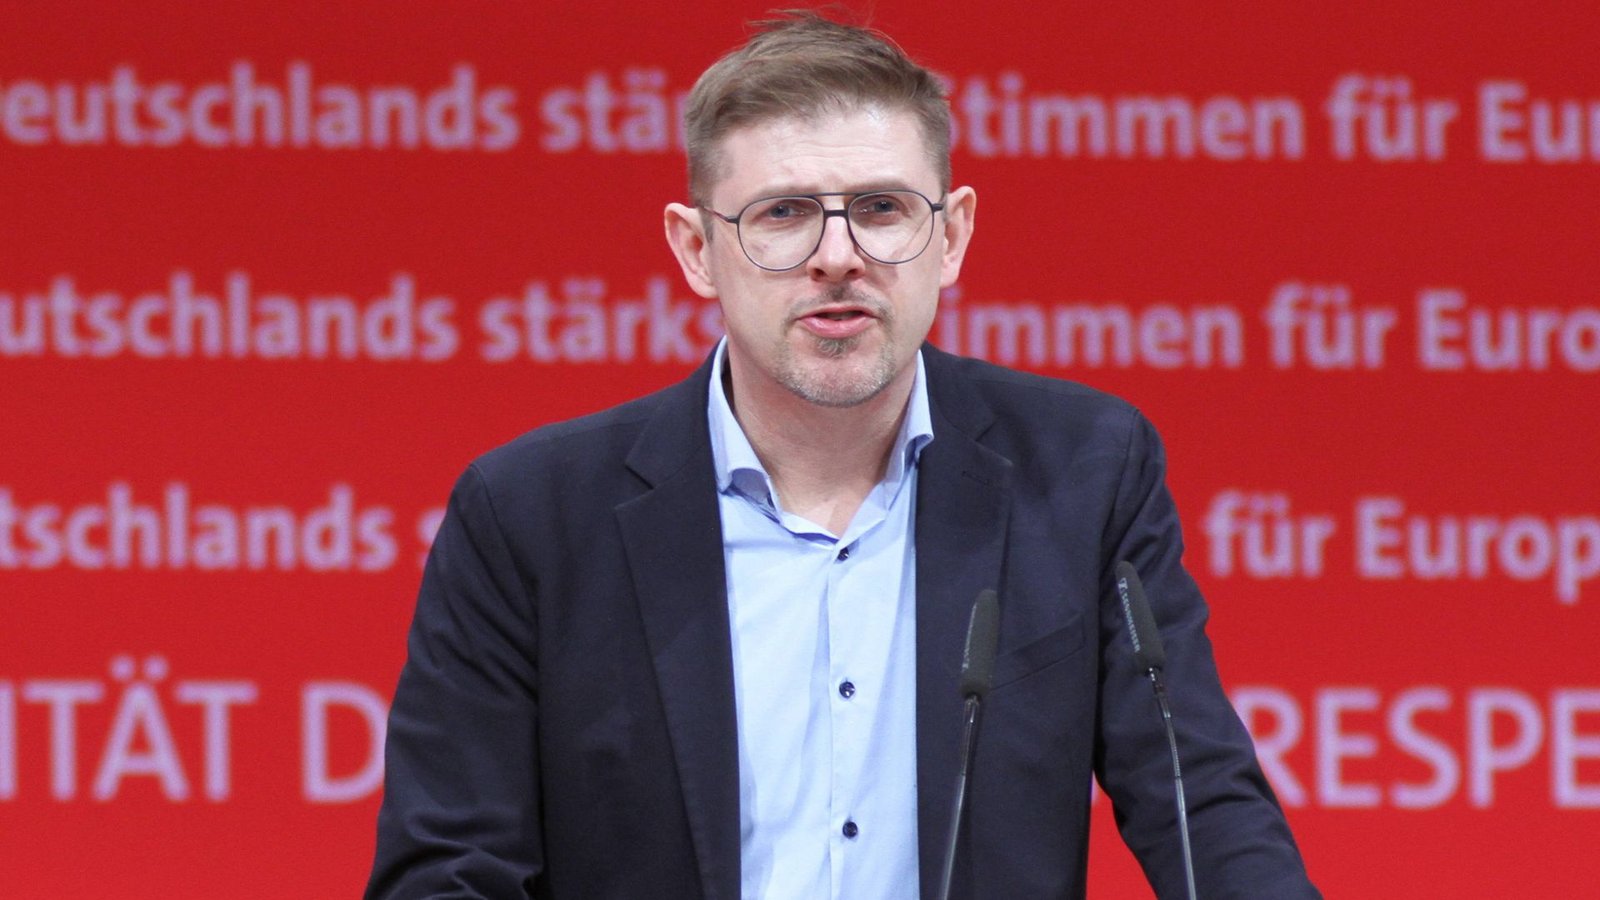 Matthias Ecke ist der Spitzenkandidat der SPD für die anstehende Europwahl. (Archivbild)Foto: imago/dts Nachrichtenagentur